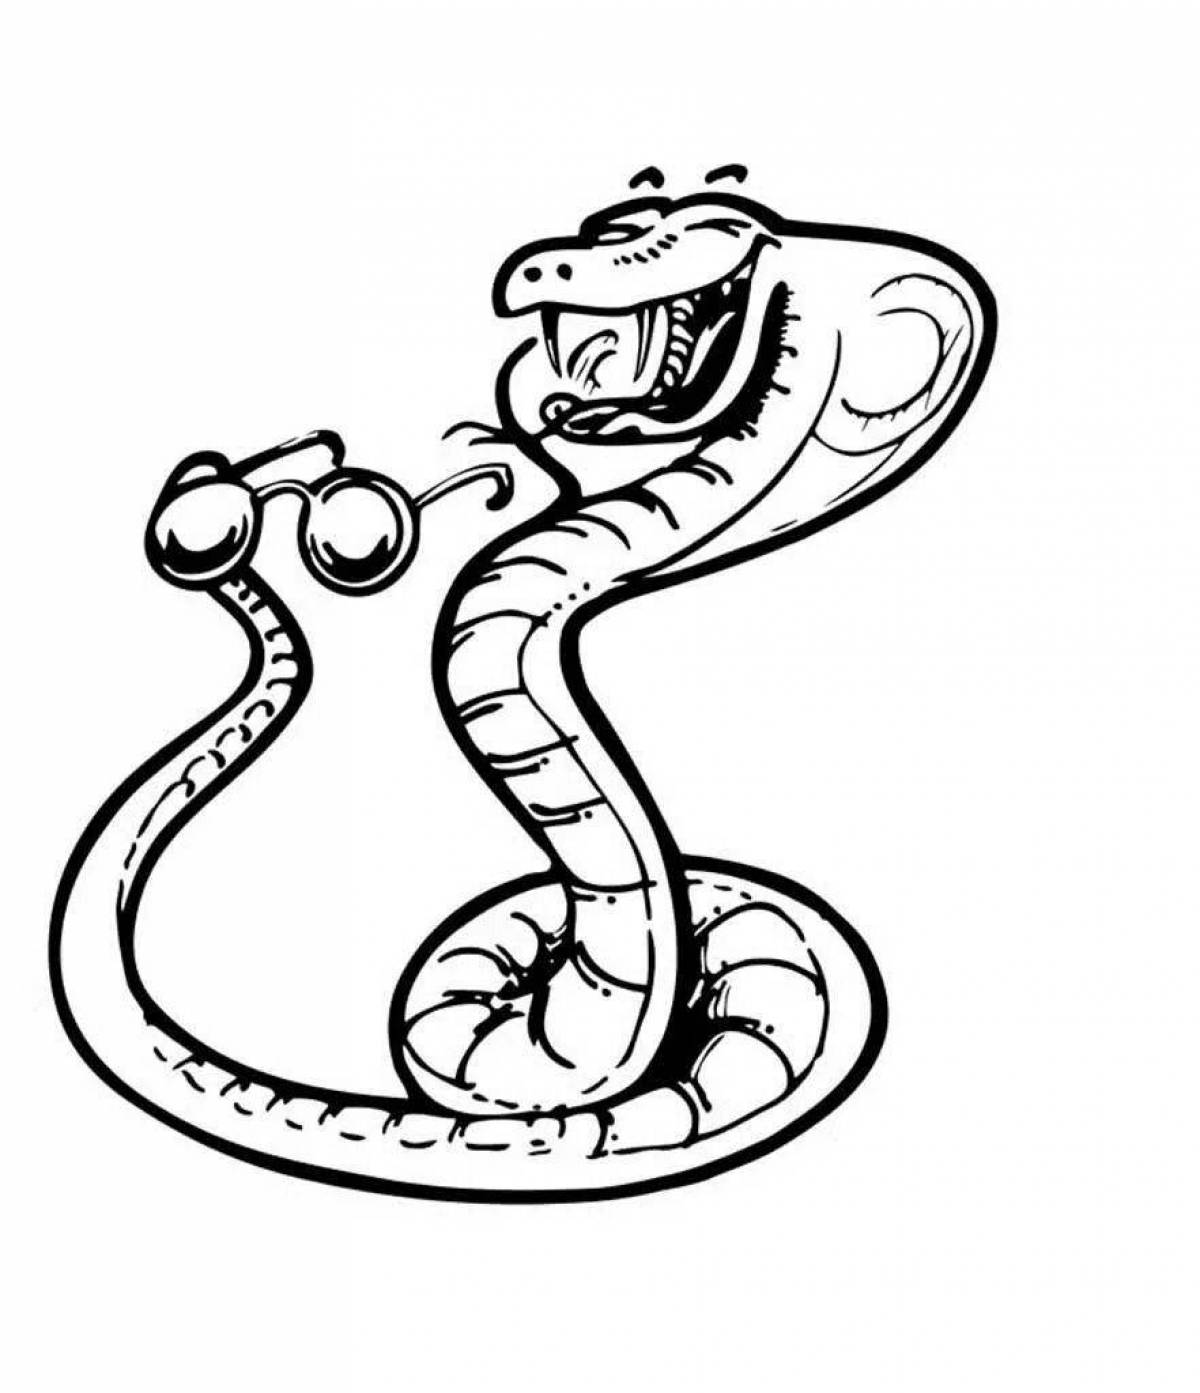 Змея раскраска Изображения – скачать бесплатно на Freepik